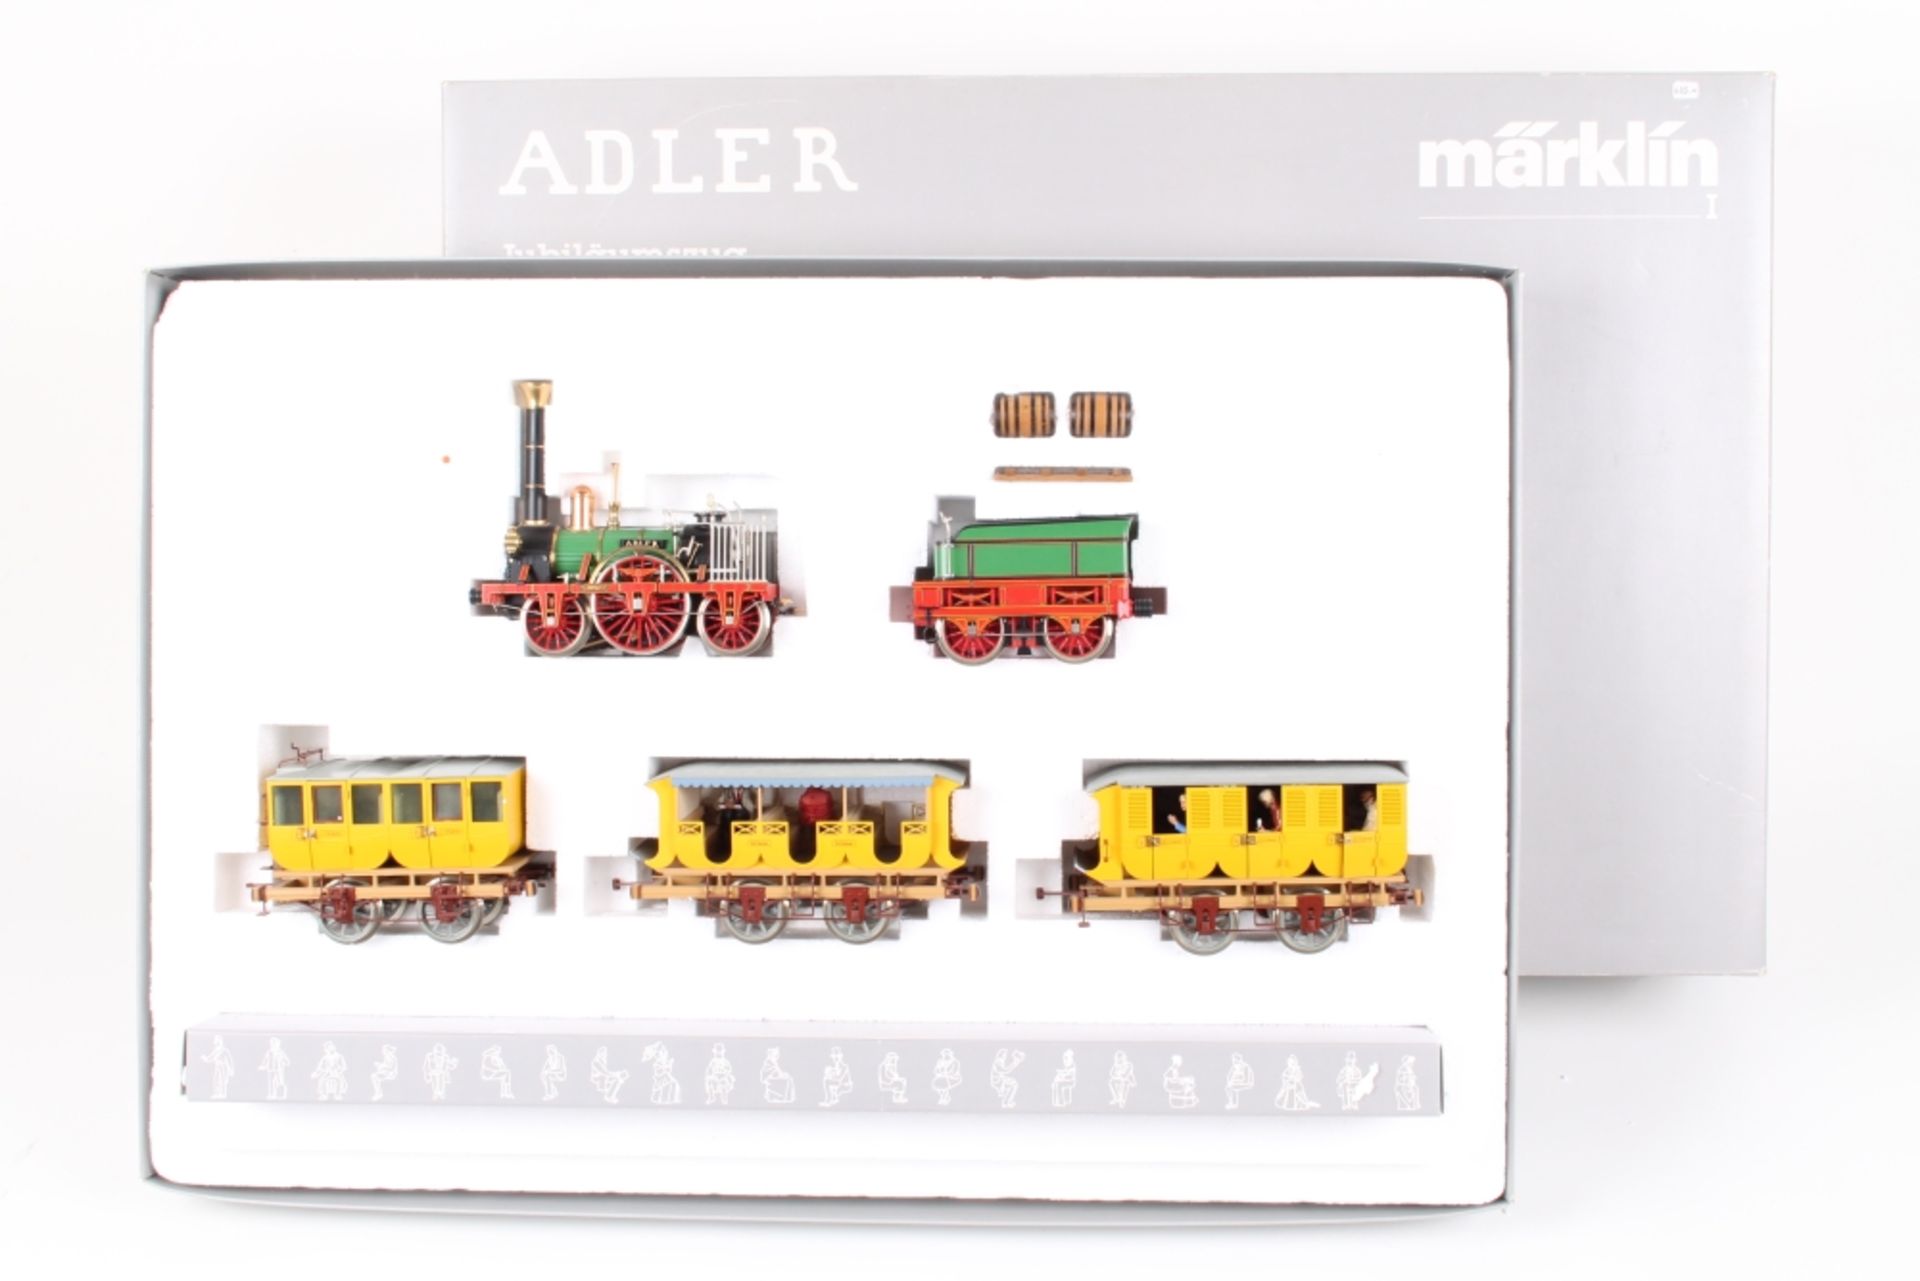 Märklin 5751, "ADLER" Jubiläumszug der DB 1985, einmalige Jubiläumsauflage 1985, Dampflok, drei